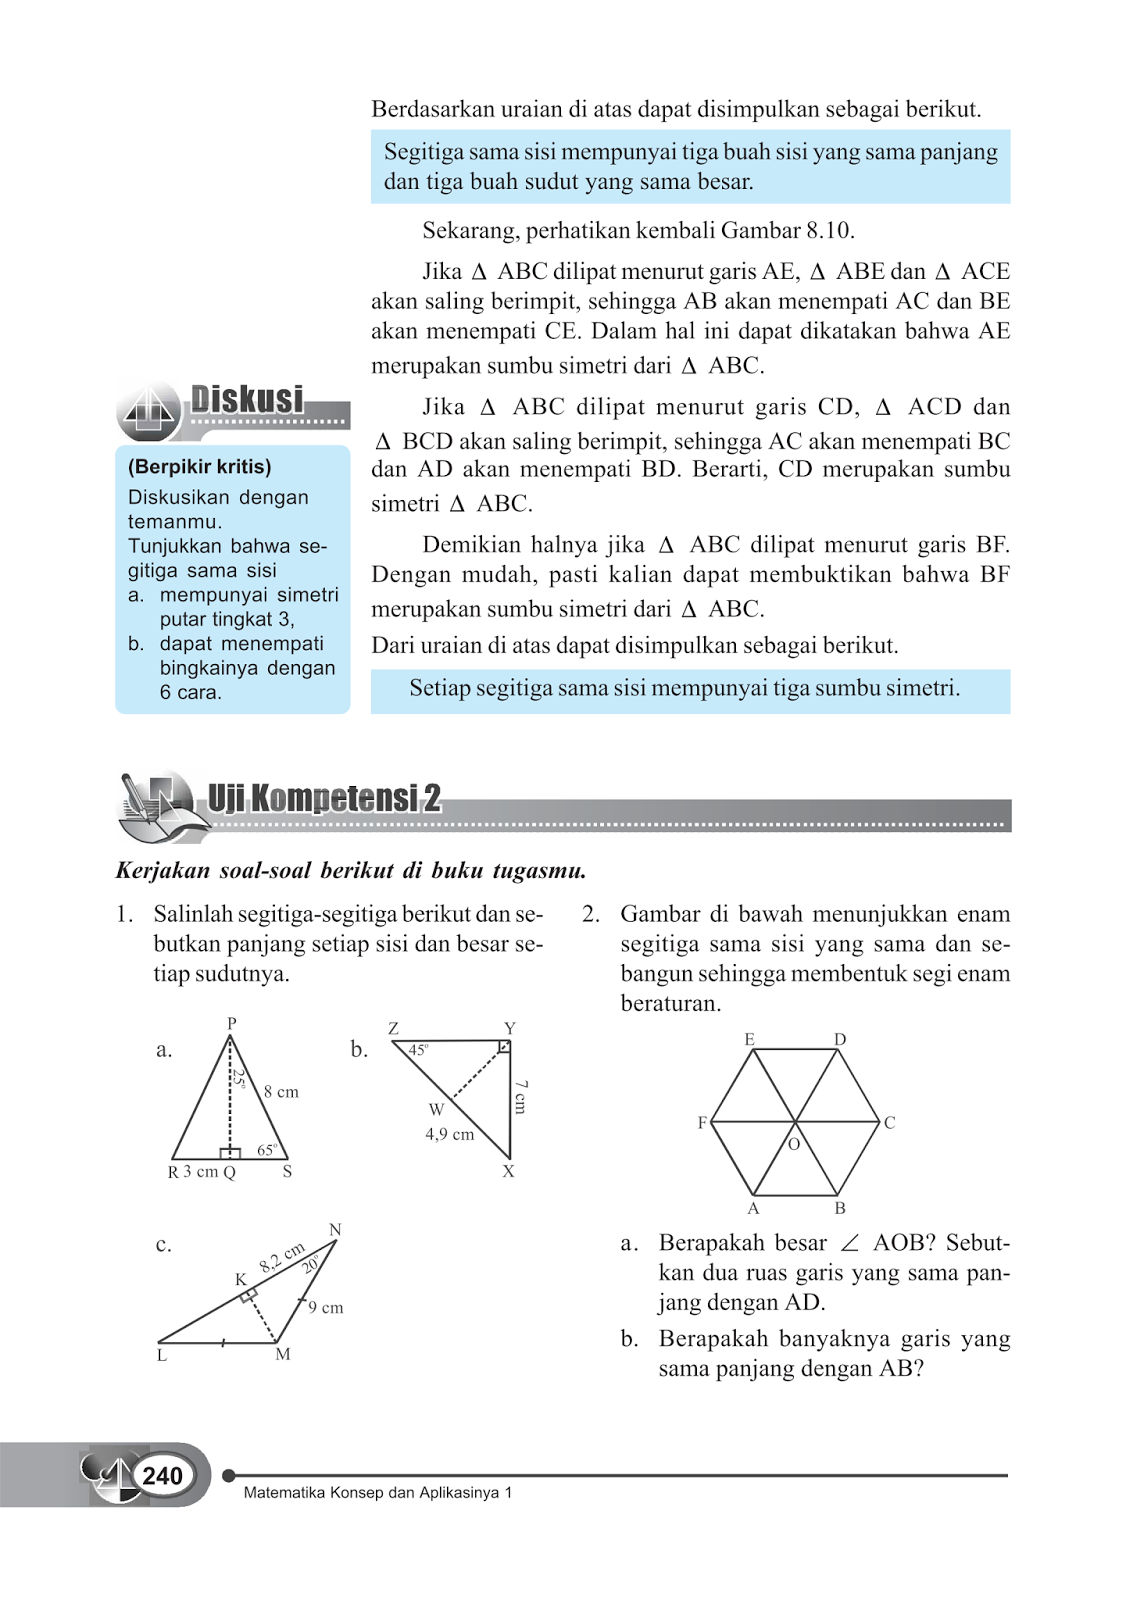 Materi Segitiga dan Segiempat SMP Kelas 7 | Artikel Matematika